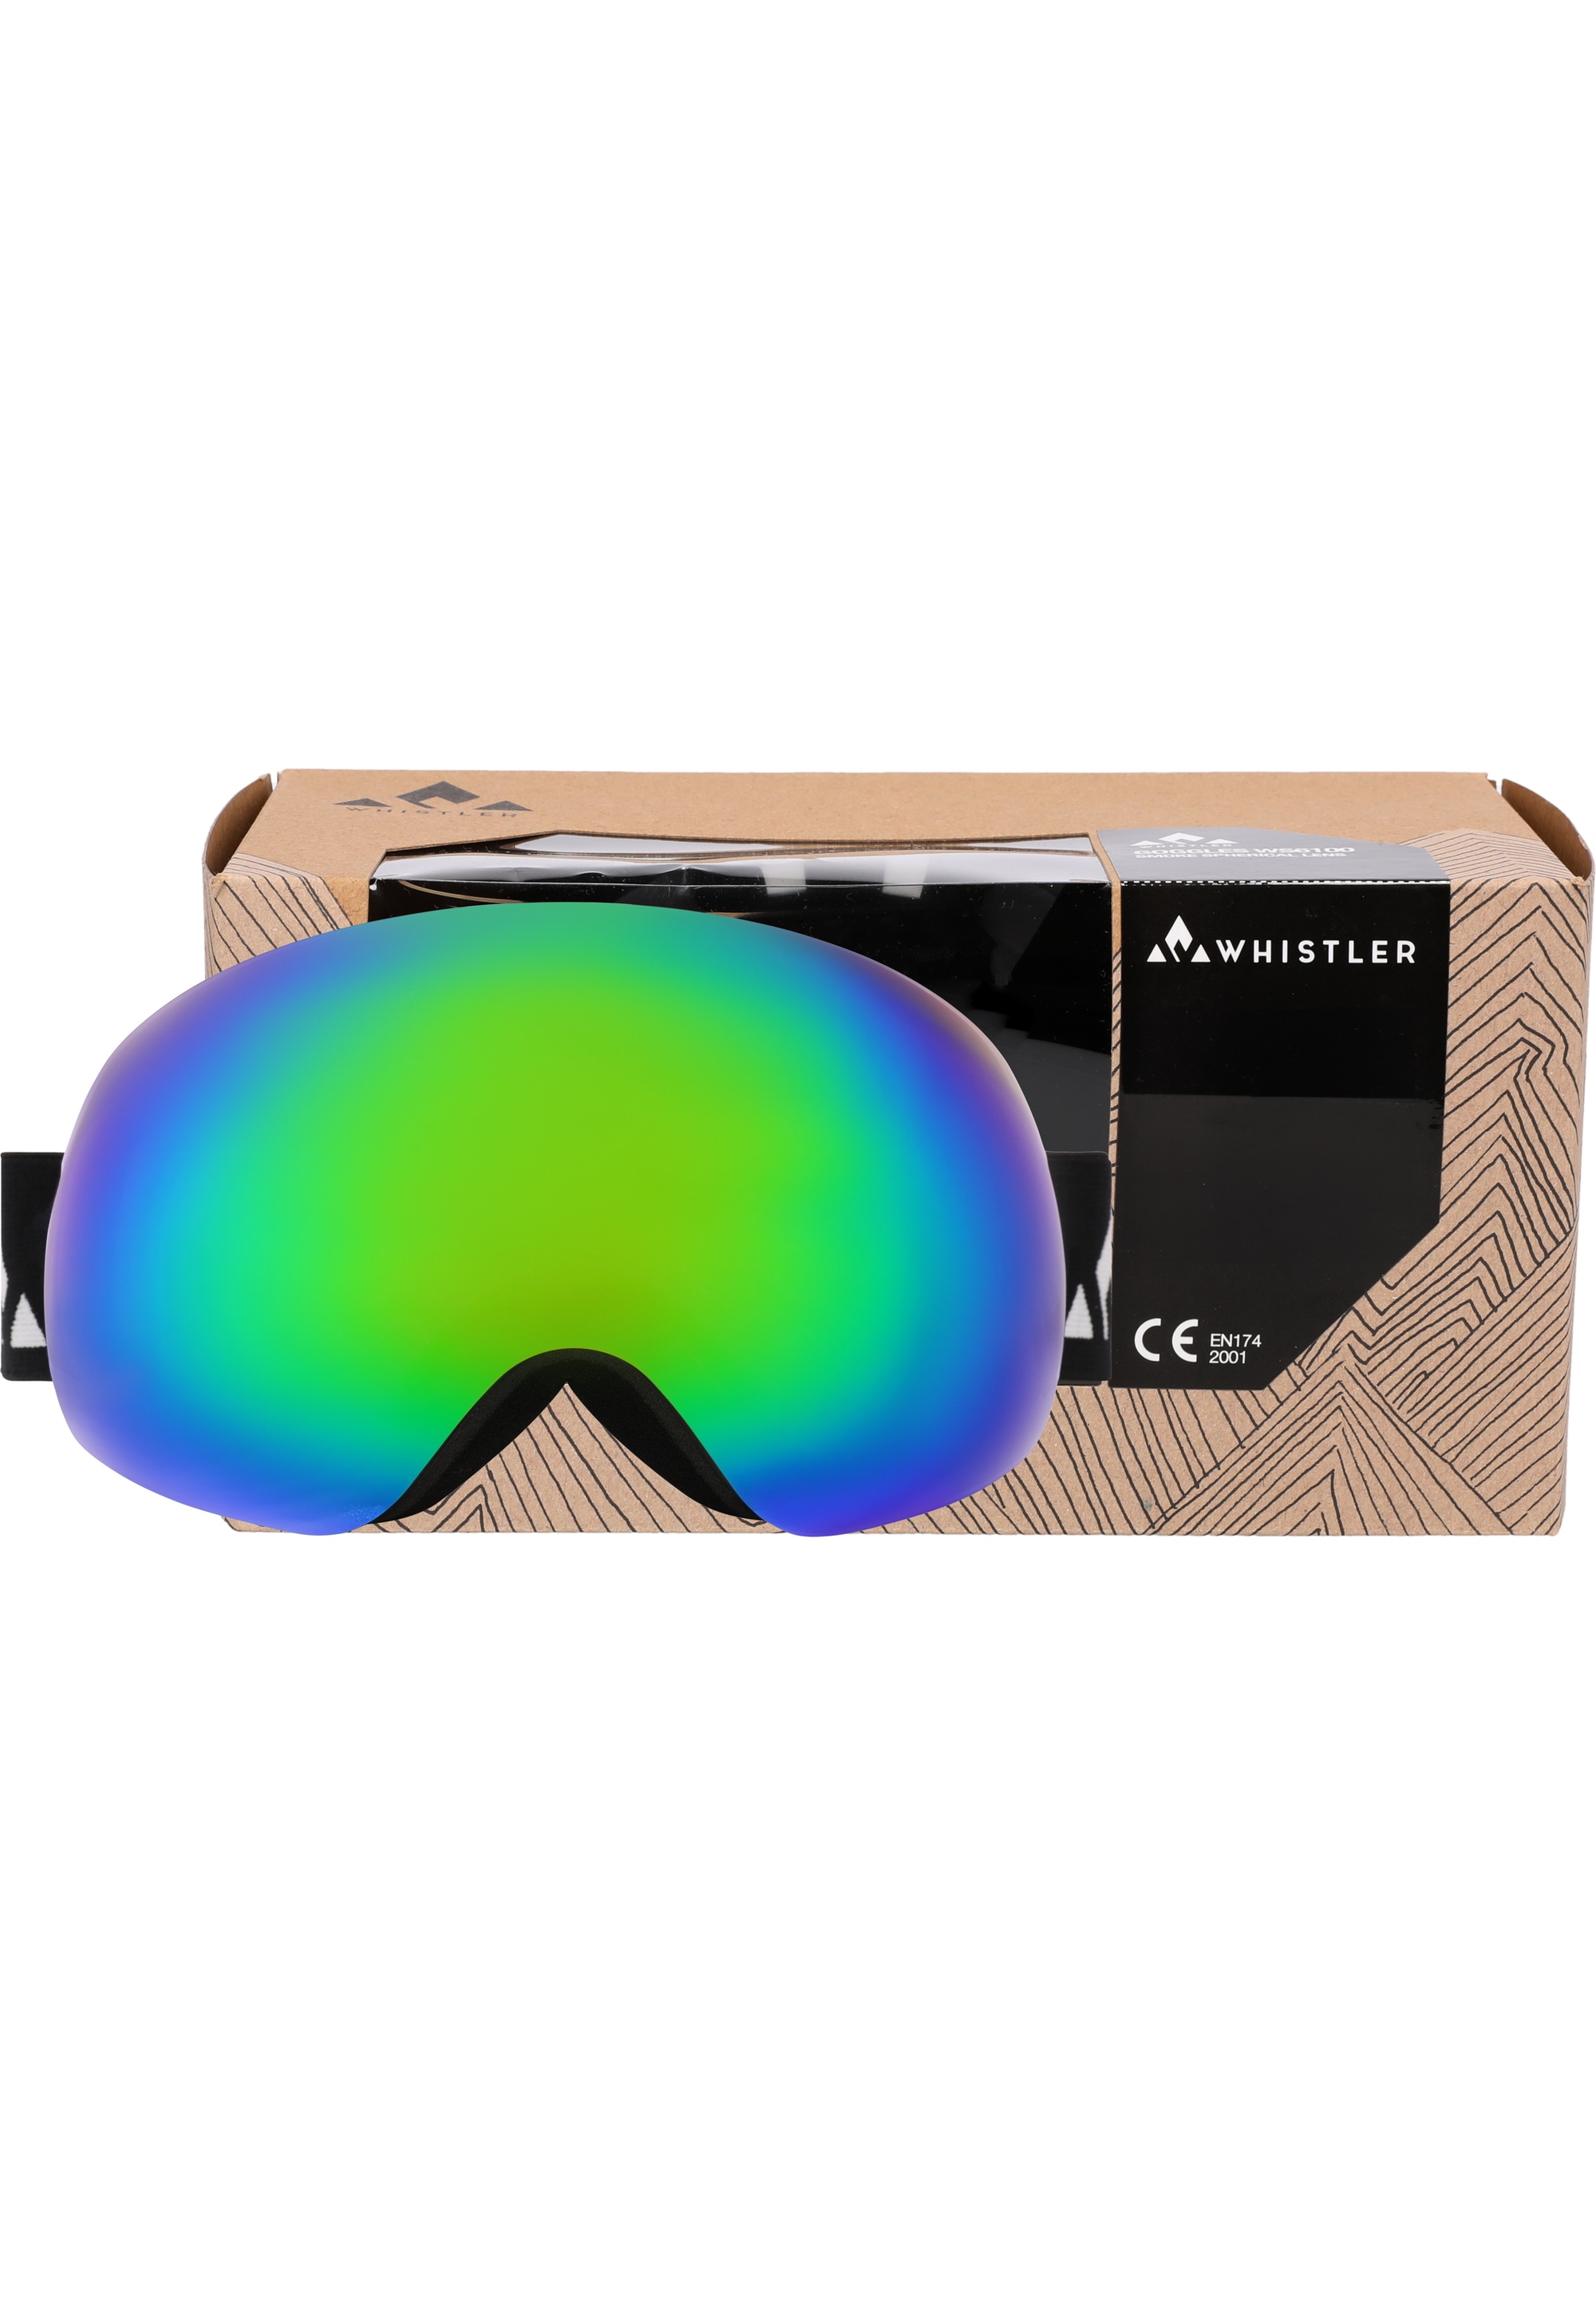 WHISTLER Skibrille »WS6100«, mit praktischer Anti-Fog-Beschichtung